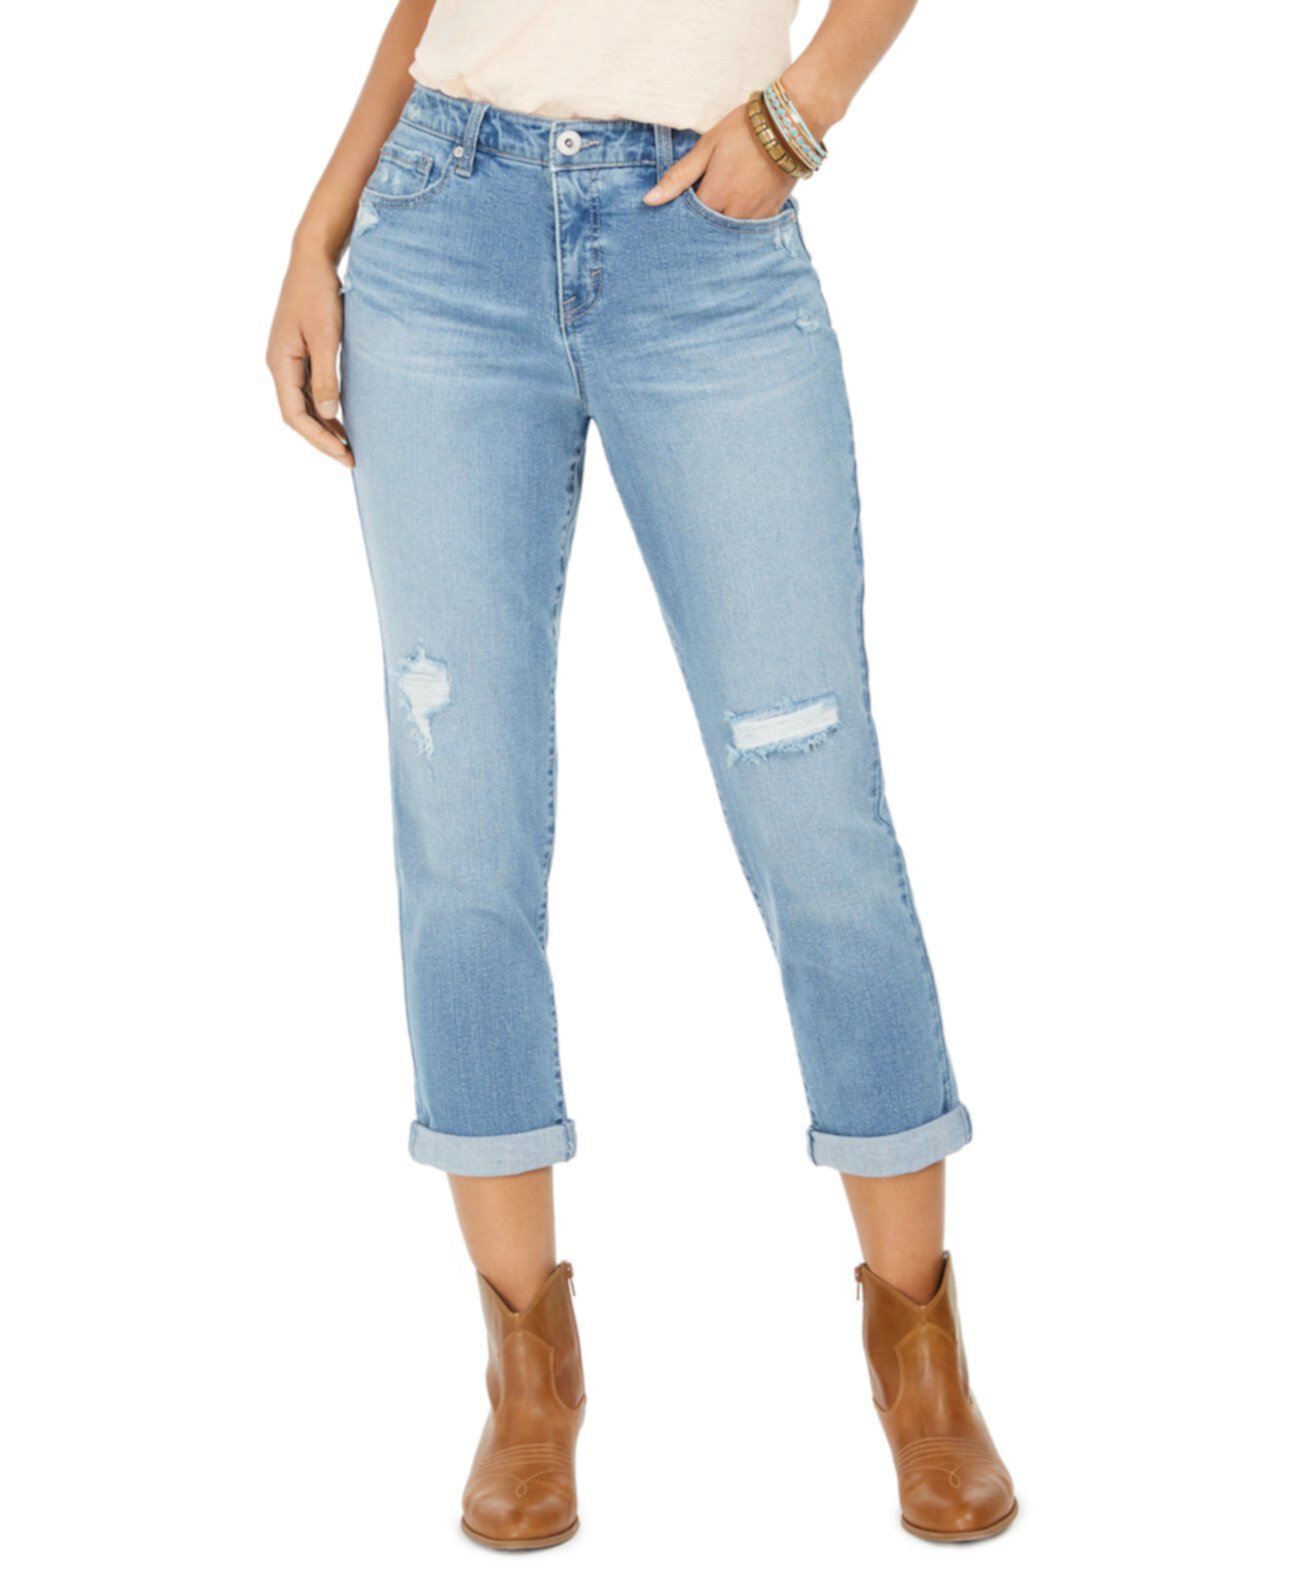 Соблазнительные рваные джинсы Girlfriend, созданные для Macy's Style & Co